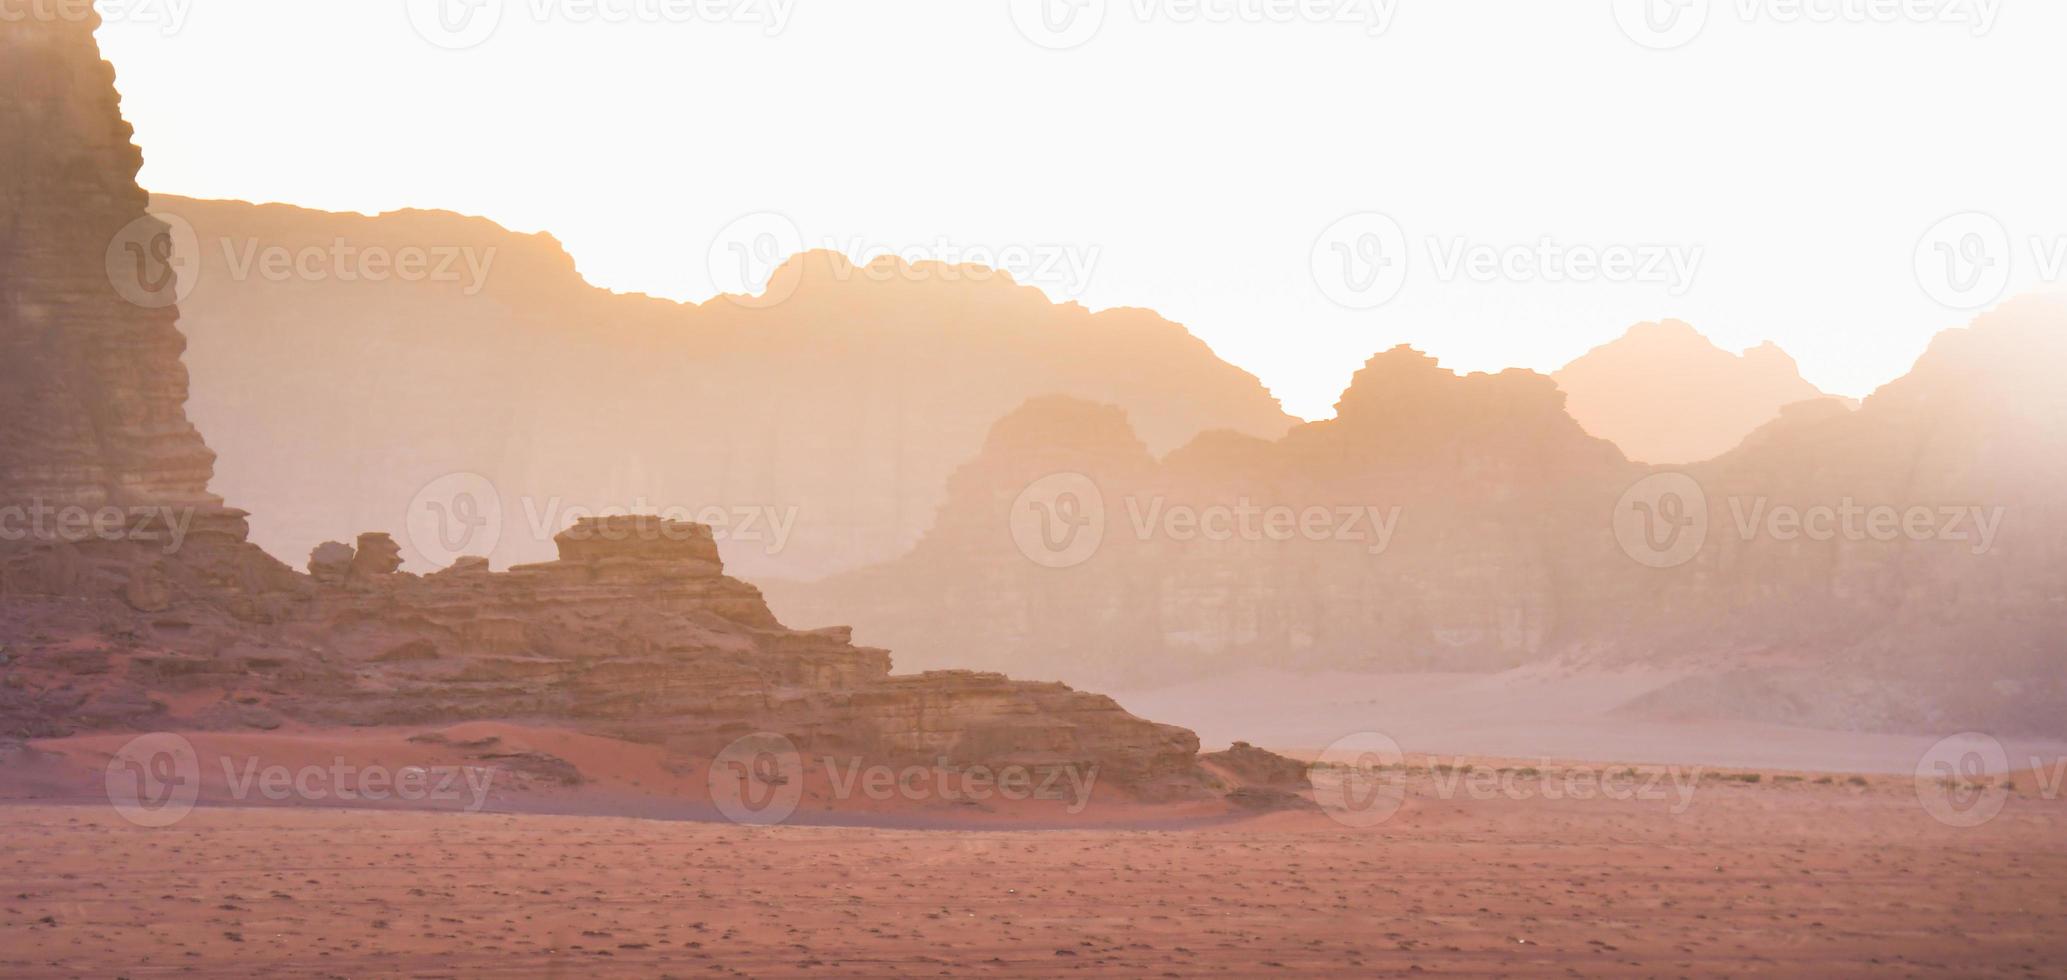 pianeta Marte piace paesaggio - foto di wadi Rum deserto nel Giordania con rosso rosa cielo sopra, Questo Posizione era Usato come impostato per molti scienza finzione film